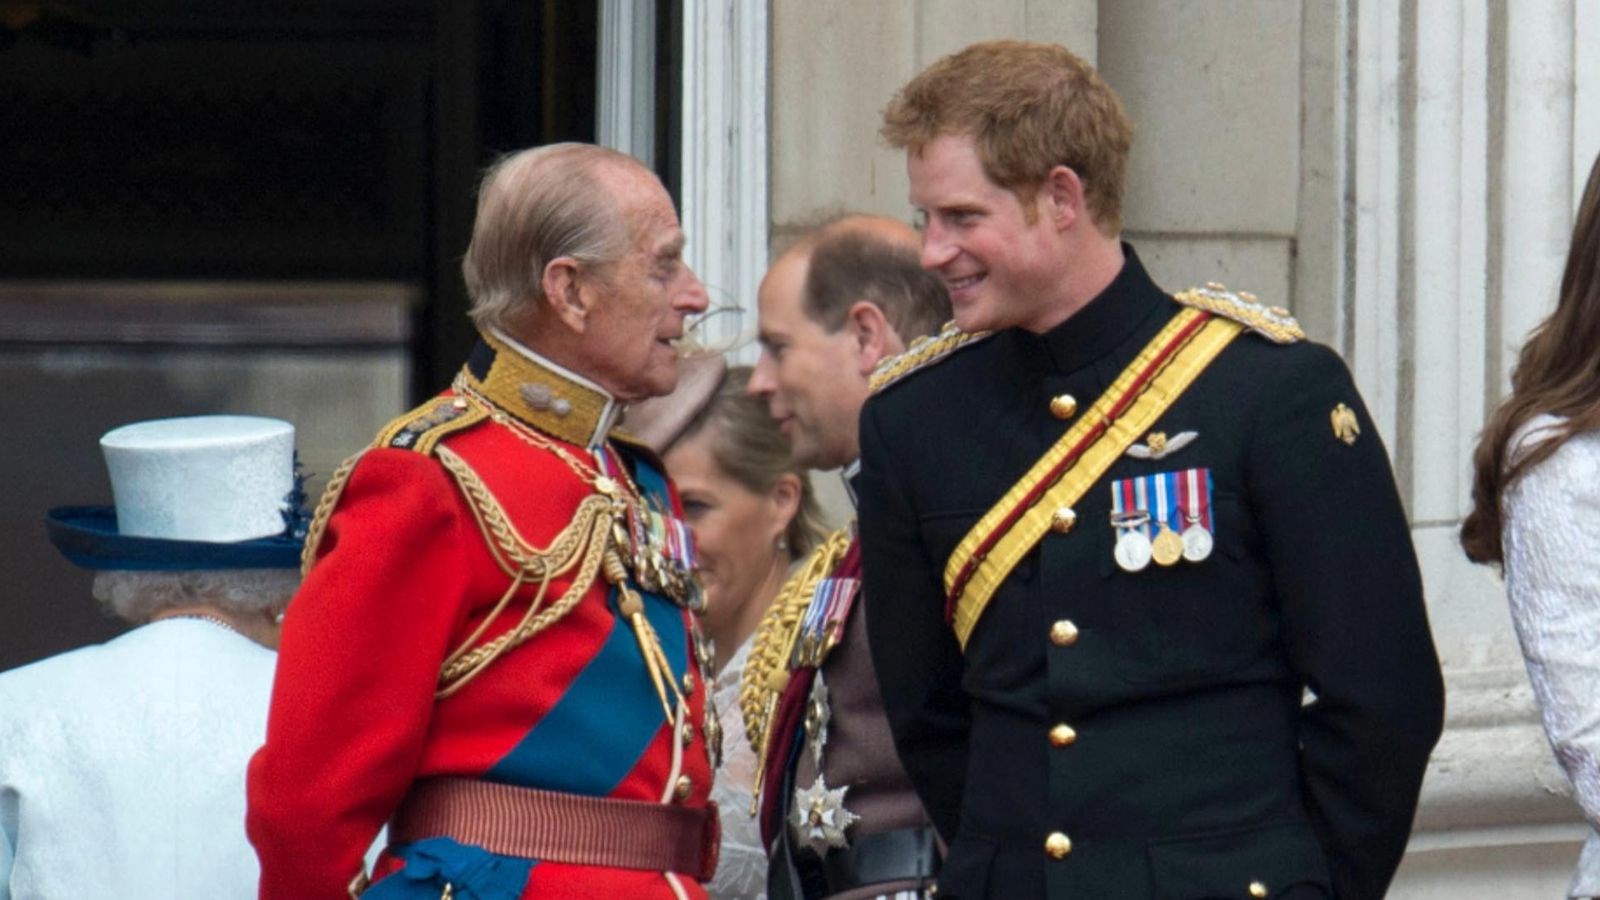 Πρίγκιπας Χάρι: Ξεχωριστή ανακοίνωση για τον παππού του μετά τον Ουίλιαμ – “Αφέντης του μπάρμπεκιου, θρύλος της φάρσας”